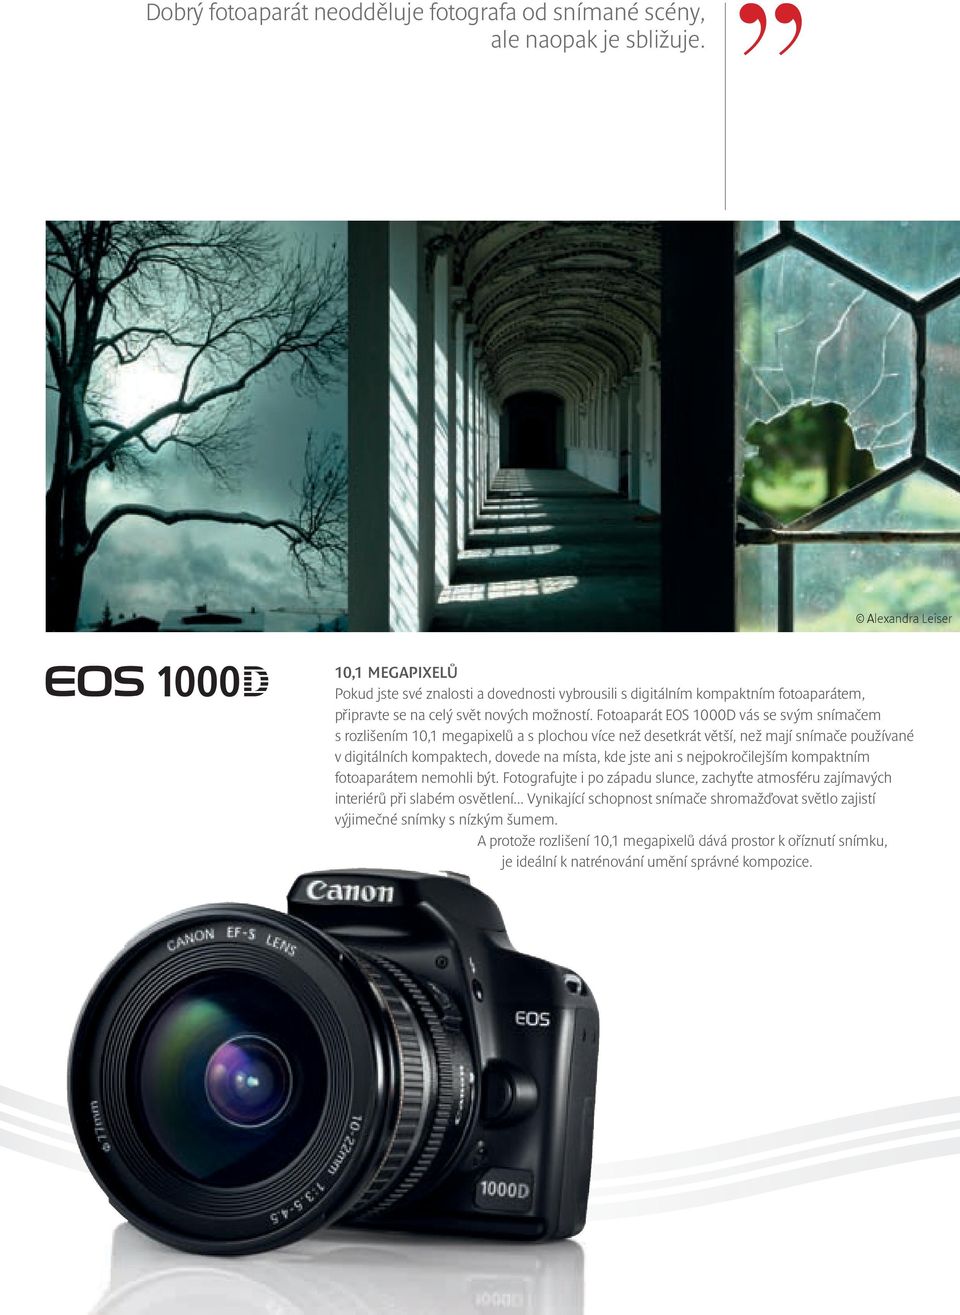 Fotoaparát EOS 1000D vás se svým snímačem s rozlišením 10,1 megapixelů a s plochou více než desetkrát větší, než mají snímače používané v digitálních kompaktech, dovede na místa, kde jste ani s